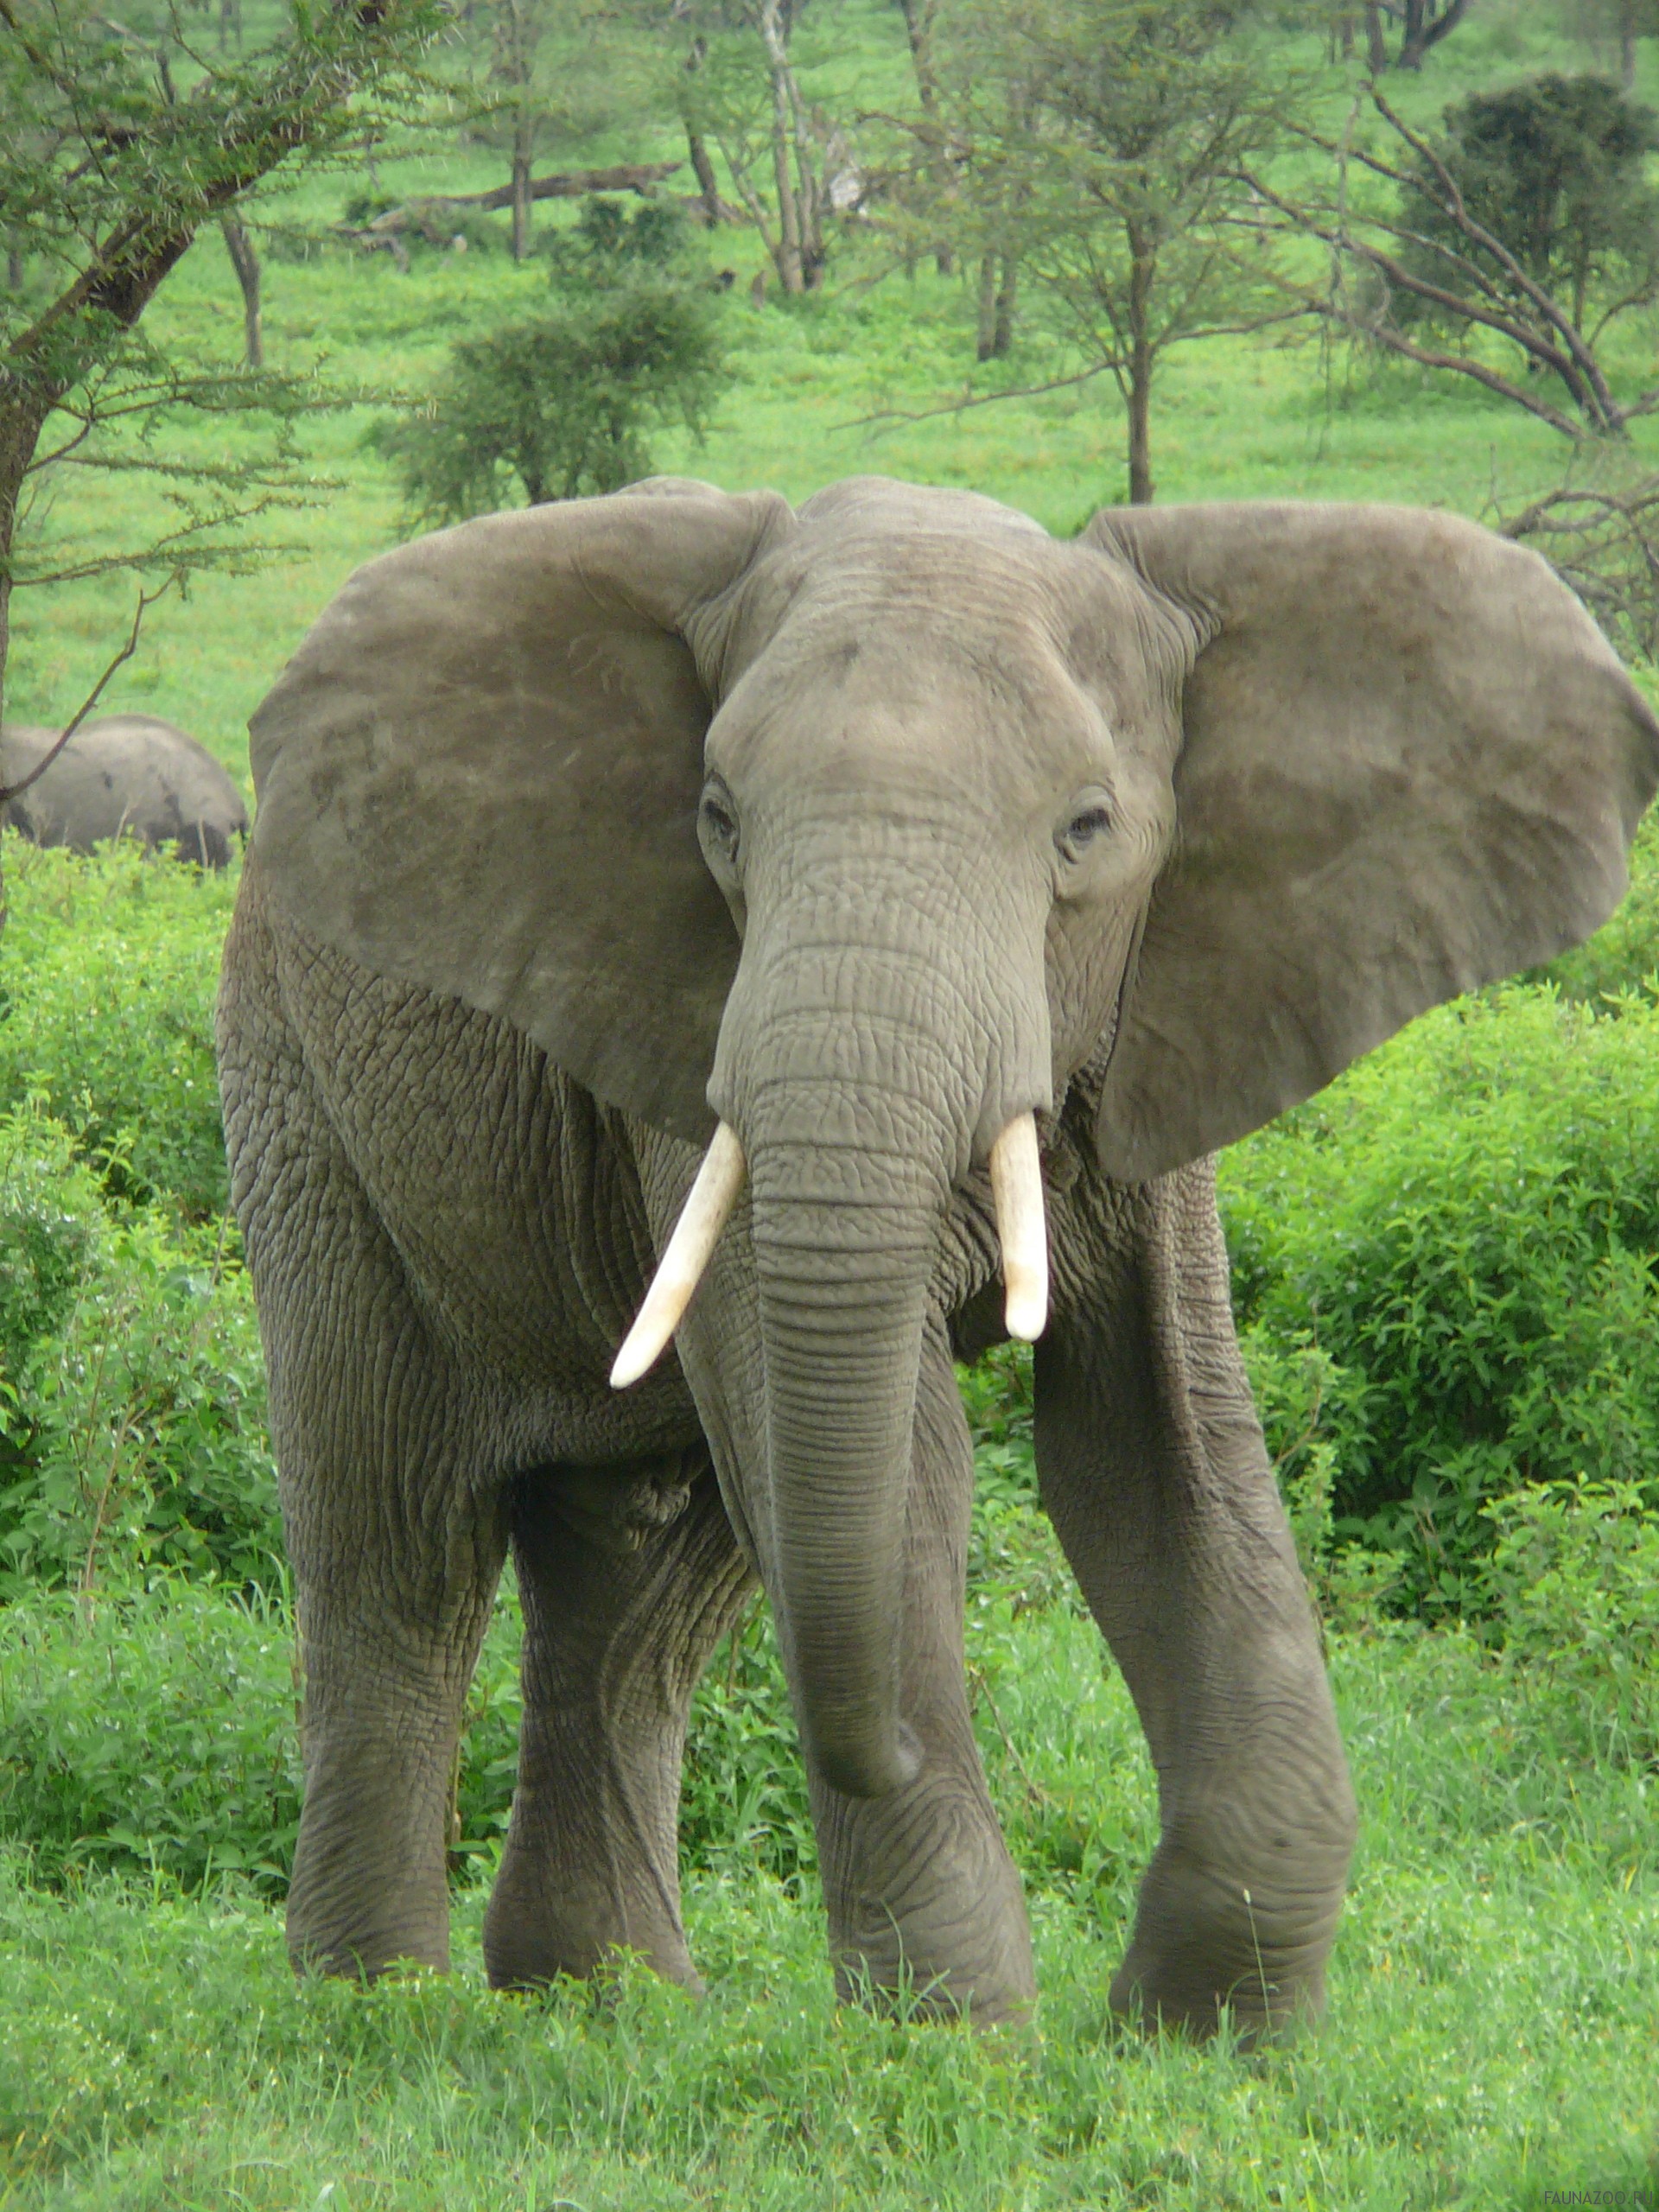 Слоны в опасности